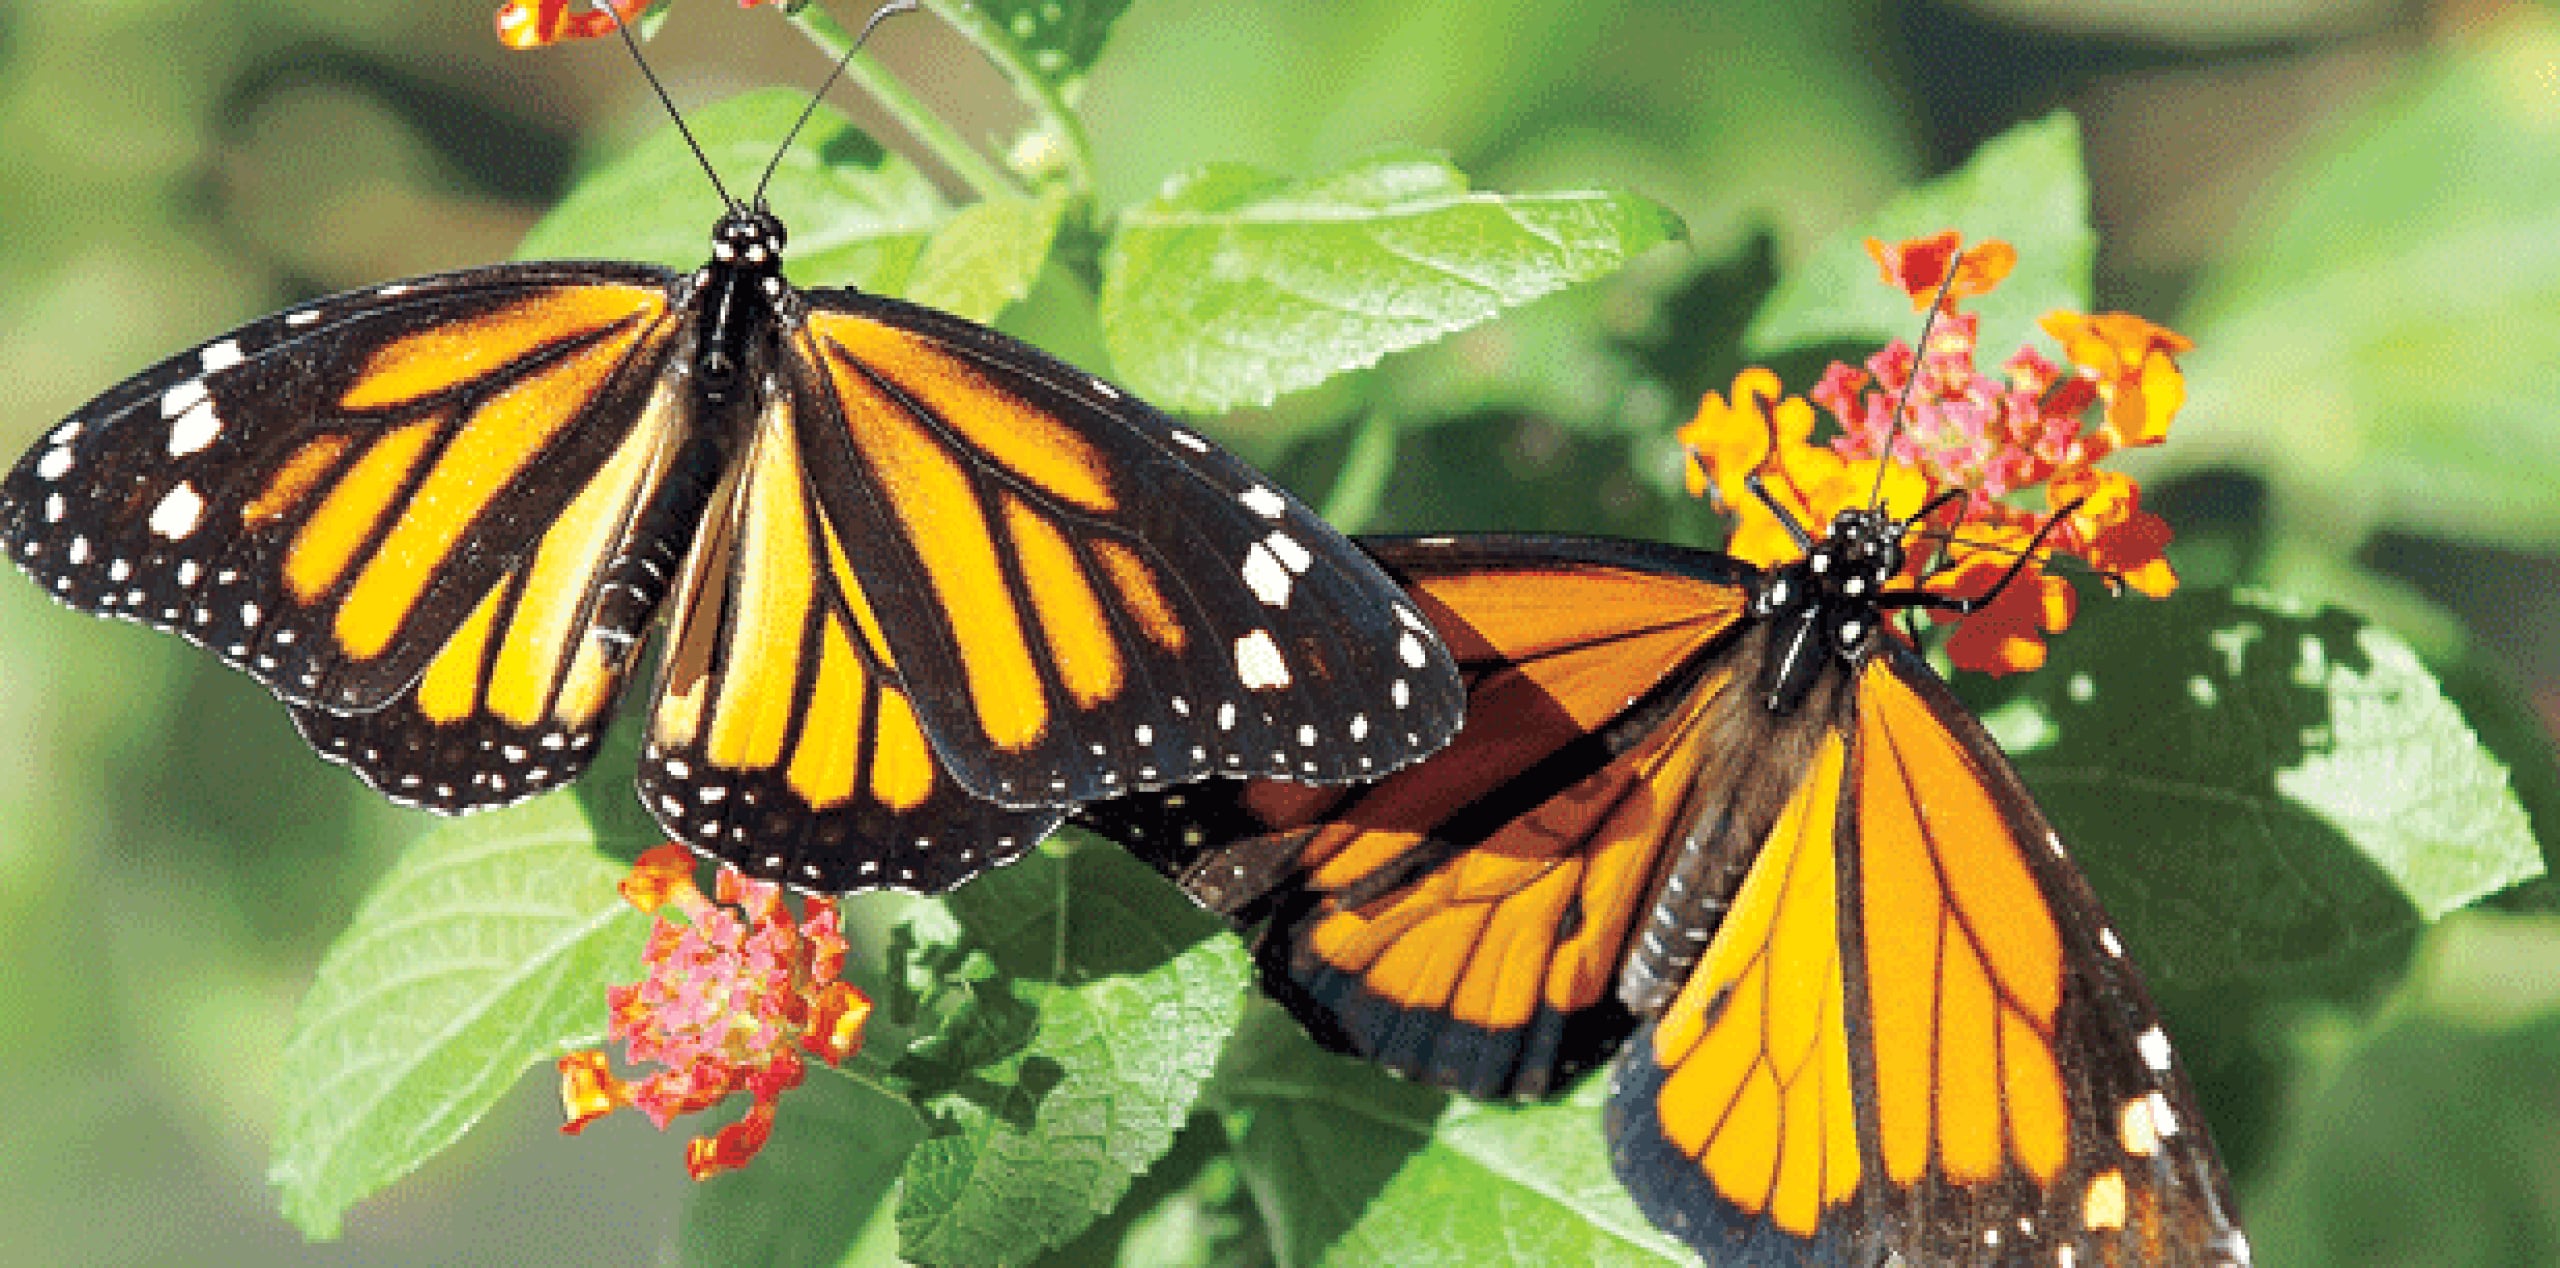 Un estudio divulgado en agosto pasado indicó que la tala clandestina en la Reserva de la Biosfera Mariposa Monarca, en el centro de México, aumentó 284,2 % en el periodo 2014-2015 respecto al lapso precedente. (Archivo)